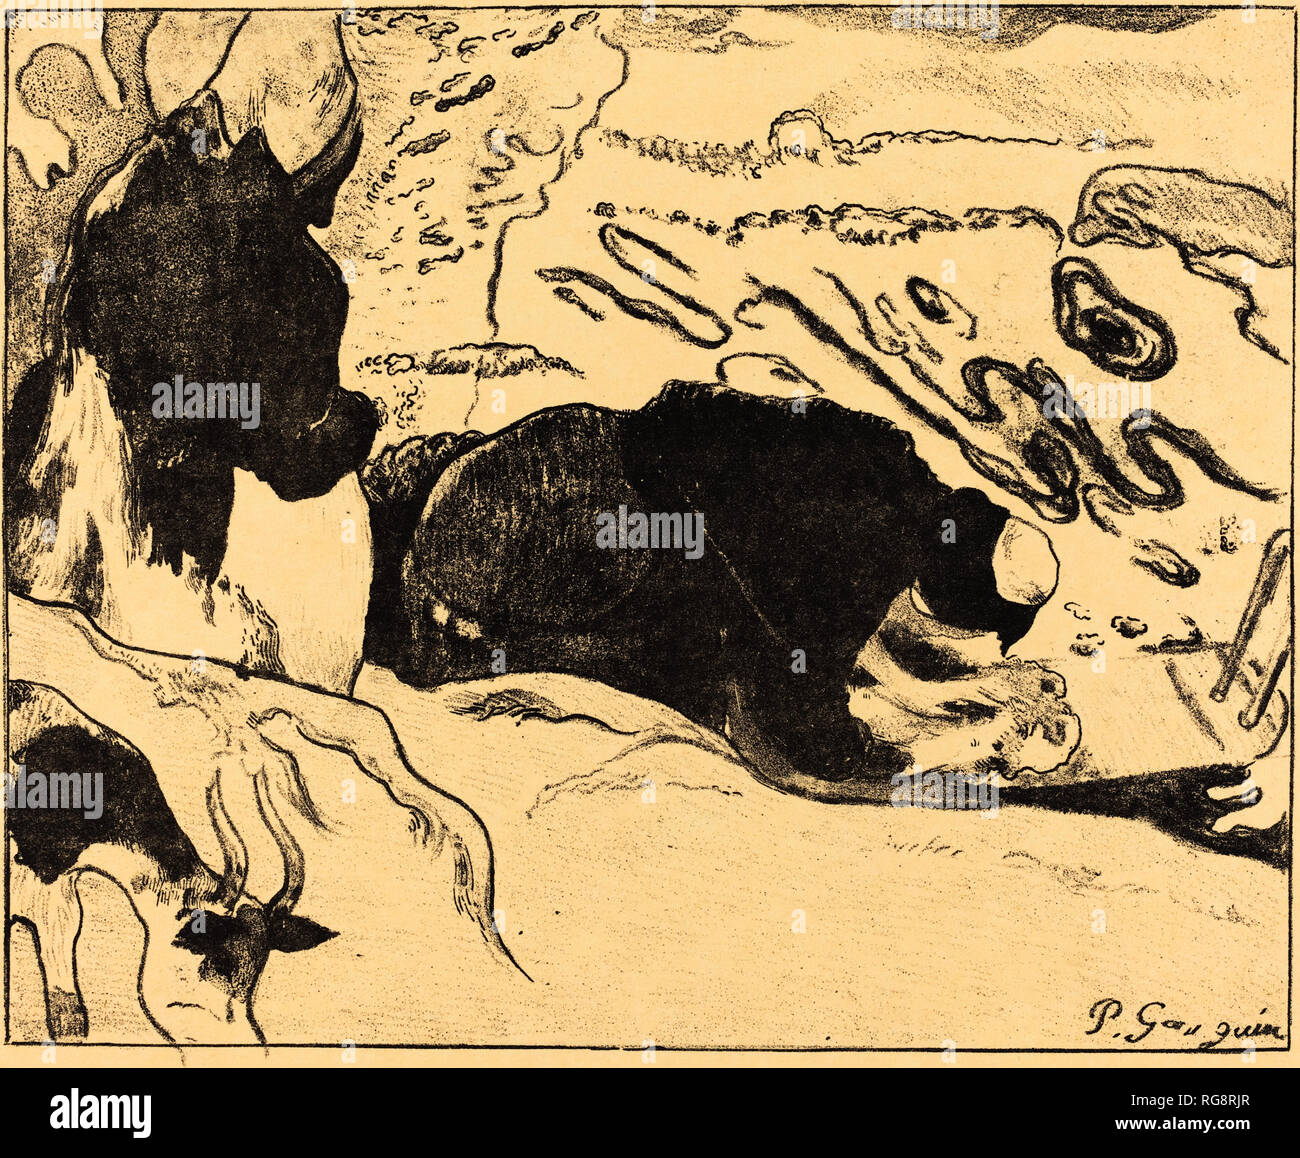 Le lavandaie (Les laveuses). Data: 1889. Medium: litografia (zinco) in nero sulla imitazione giappone carta. Museo: National Gallery of Art di Washington DC. Autore: Paul Gauguin. GAUGUIN, Paolo. Foto Stock